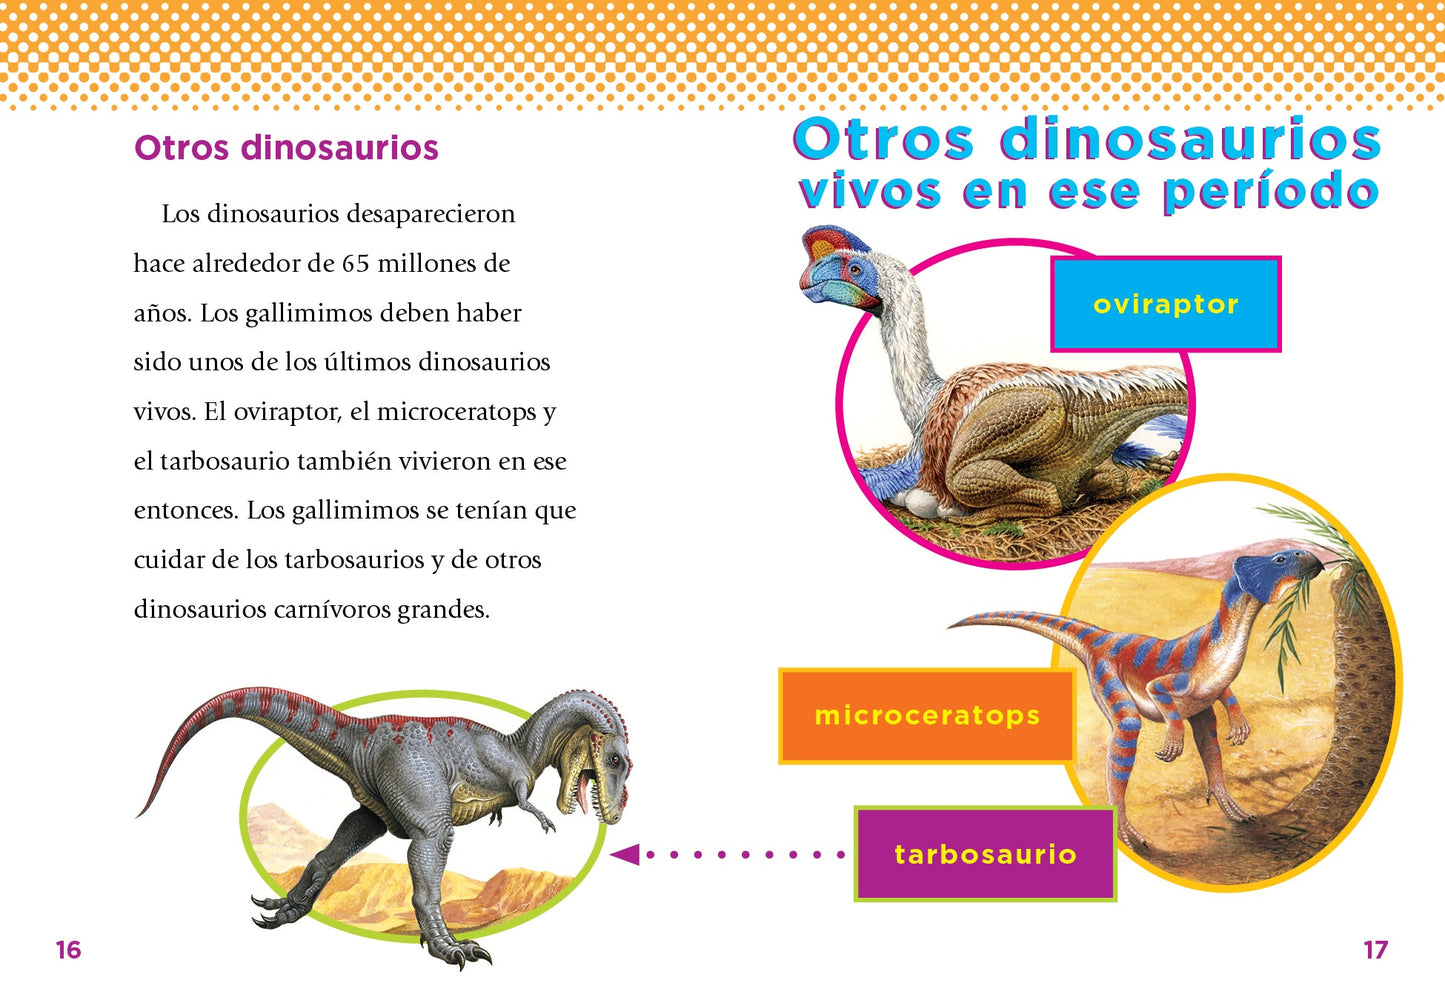 Descubrimiento de dinosaurios: El gallimimo